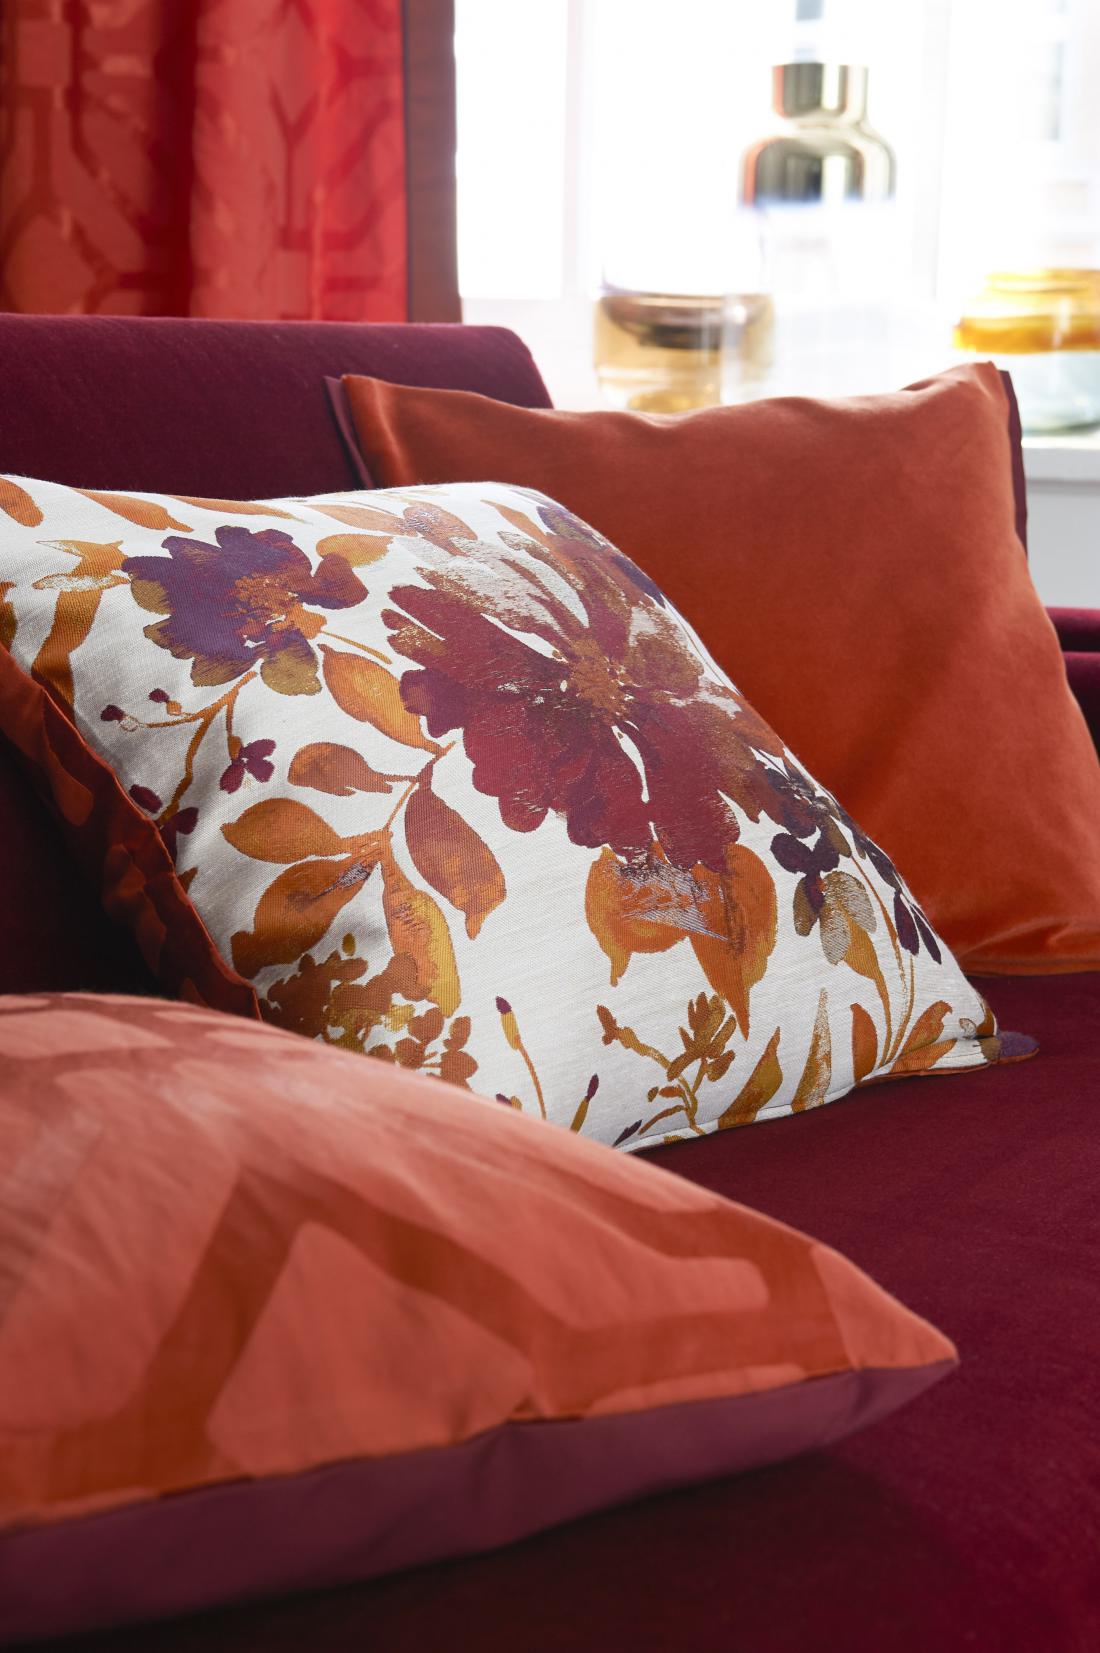 Nemško združenje vodilnih tekstilnih podjetij Deco team je med trendovske barvne kombinacije za letos uvrstilo tudi rdečerjave odtenke, ki jih lahko krasijo cvetlični vzorci (arhiv Deco team).